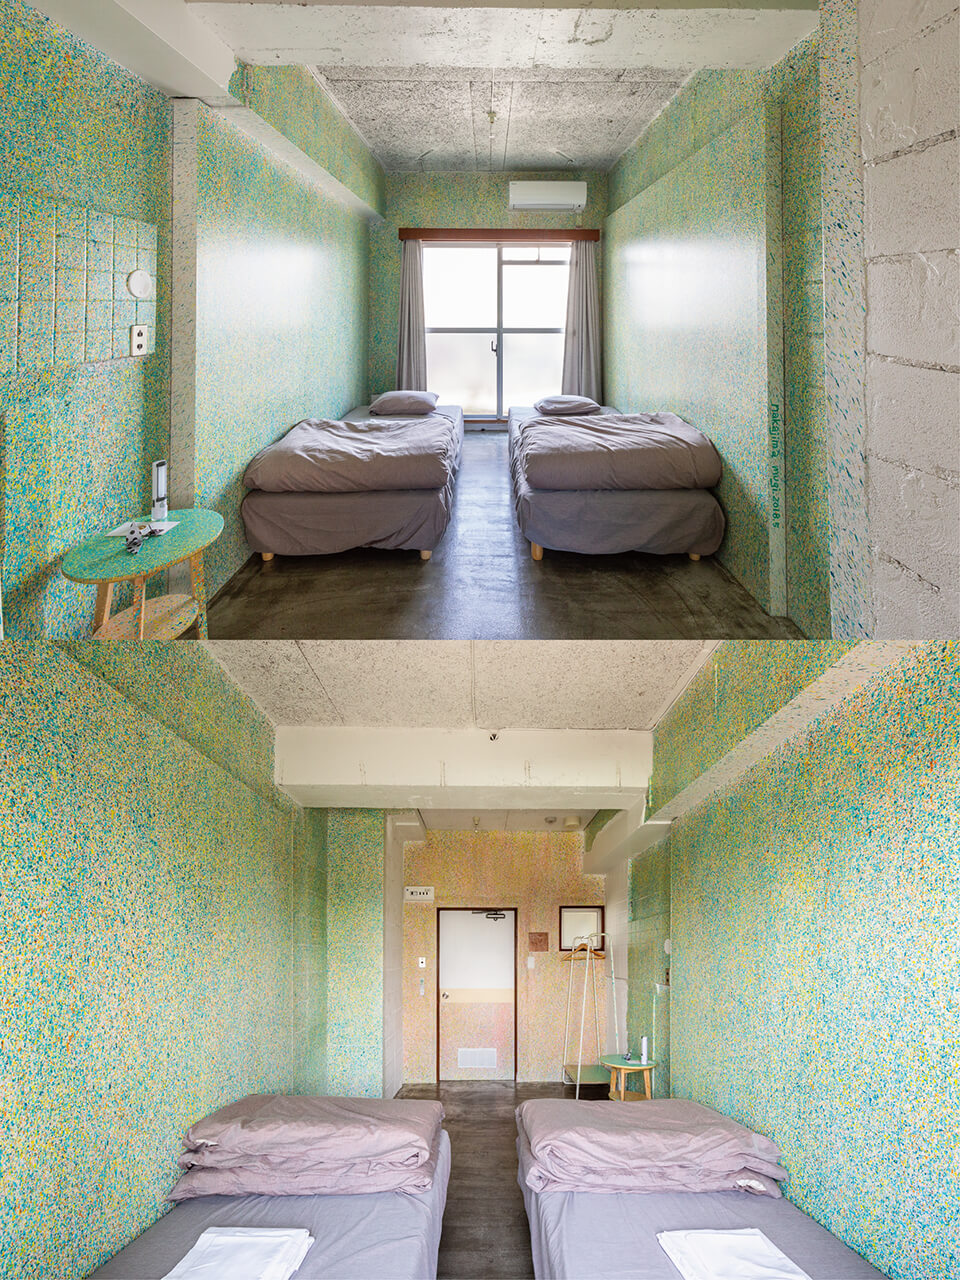 [ホテルアートルームプロジェクト]<br />
「アウト プット アート プット」<br />
2018<br />
ホテルの1室に全面的にペインティング/宿泊可能<br />
acrylic direct on wall<br />
SHIBAMATA FU-TEN Bed and Local/東京